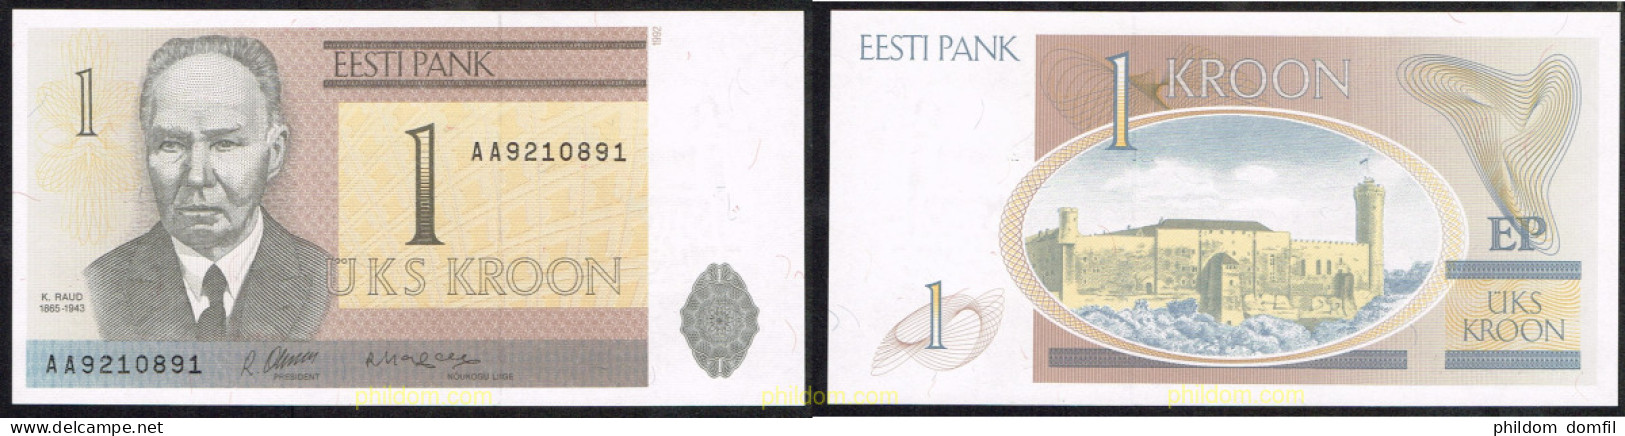 4794 ESTONIA 1992 ESTLAND 1 KROON 1992 - Estonia